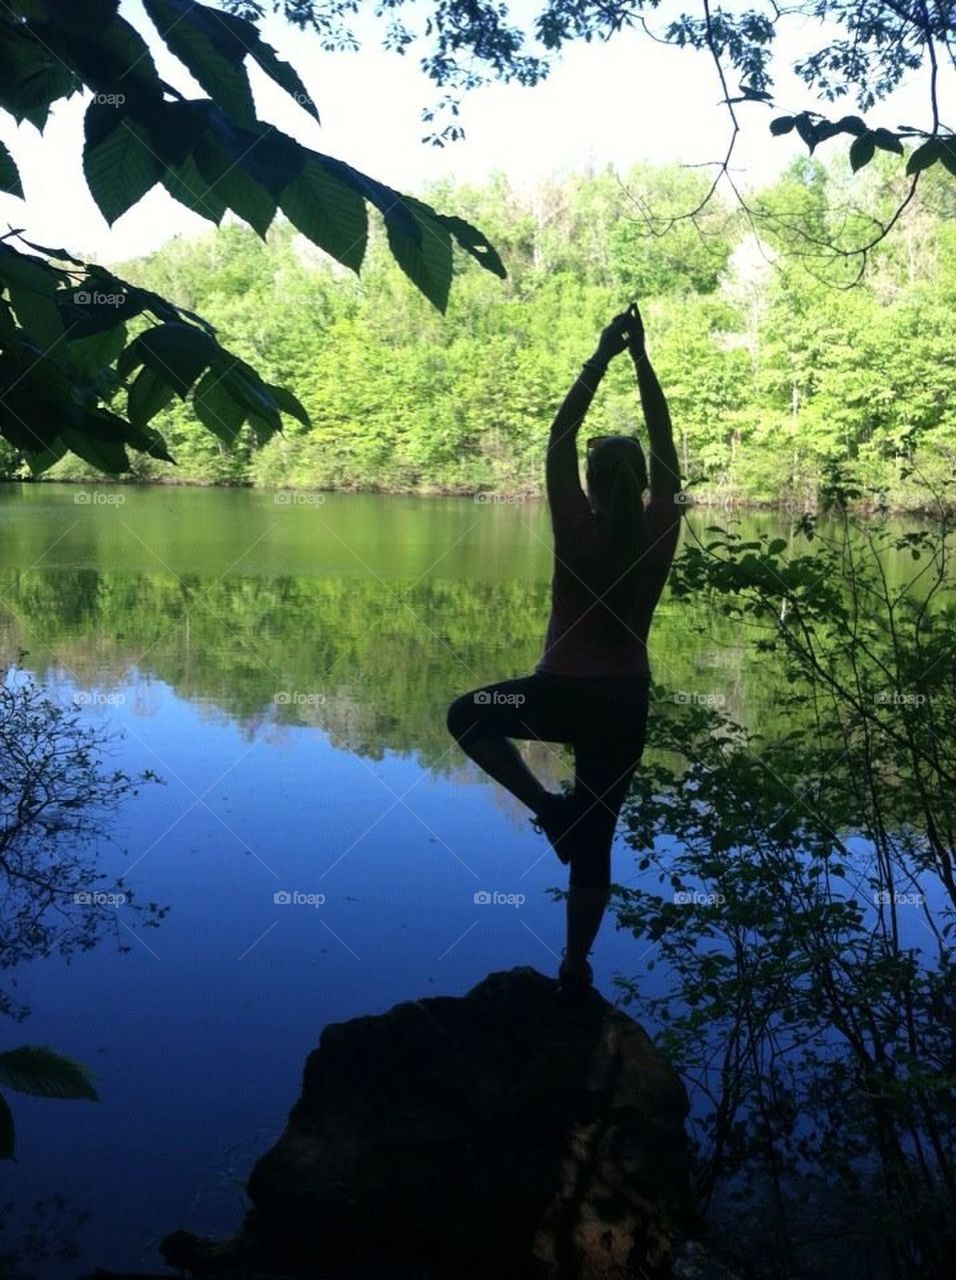 Yoga on a Rock